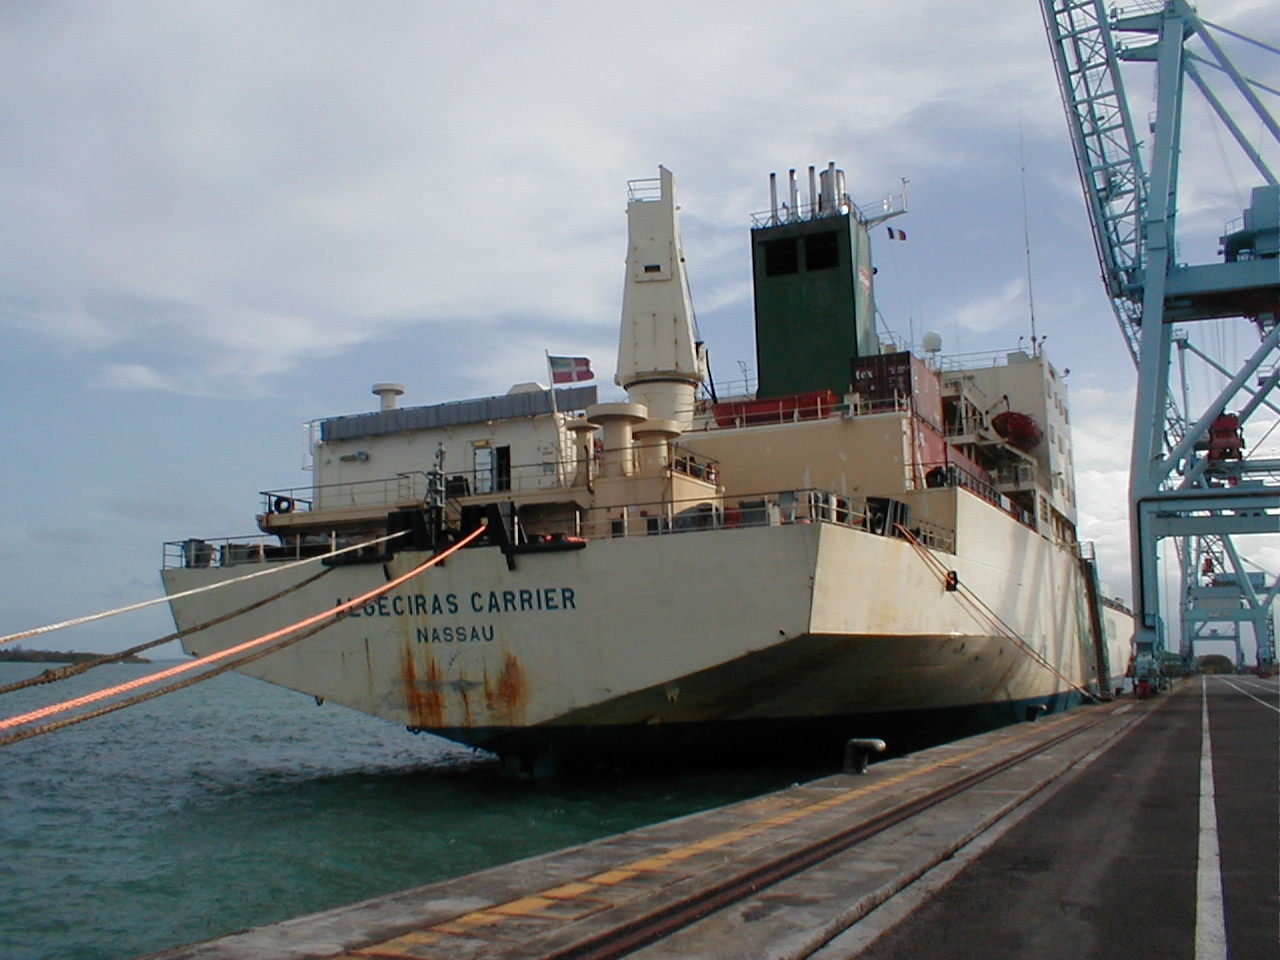 Algeciras carrier